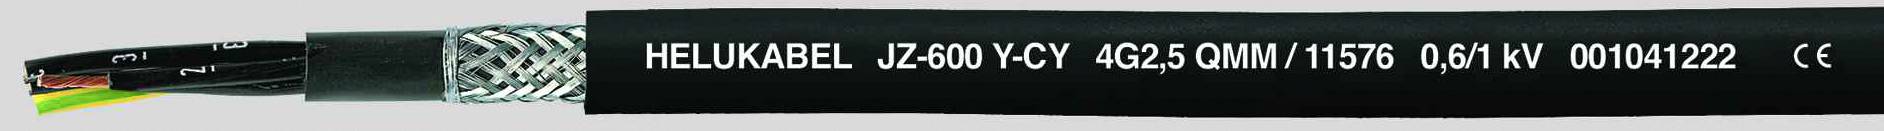 HELUKABEL JZ-600-Y-CY Steuerleitung 5 G 2.50 mm² Schwarz 11577-500 500 m